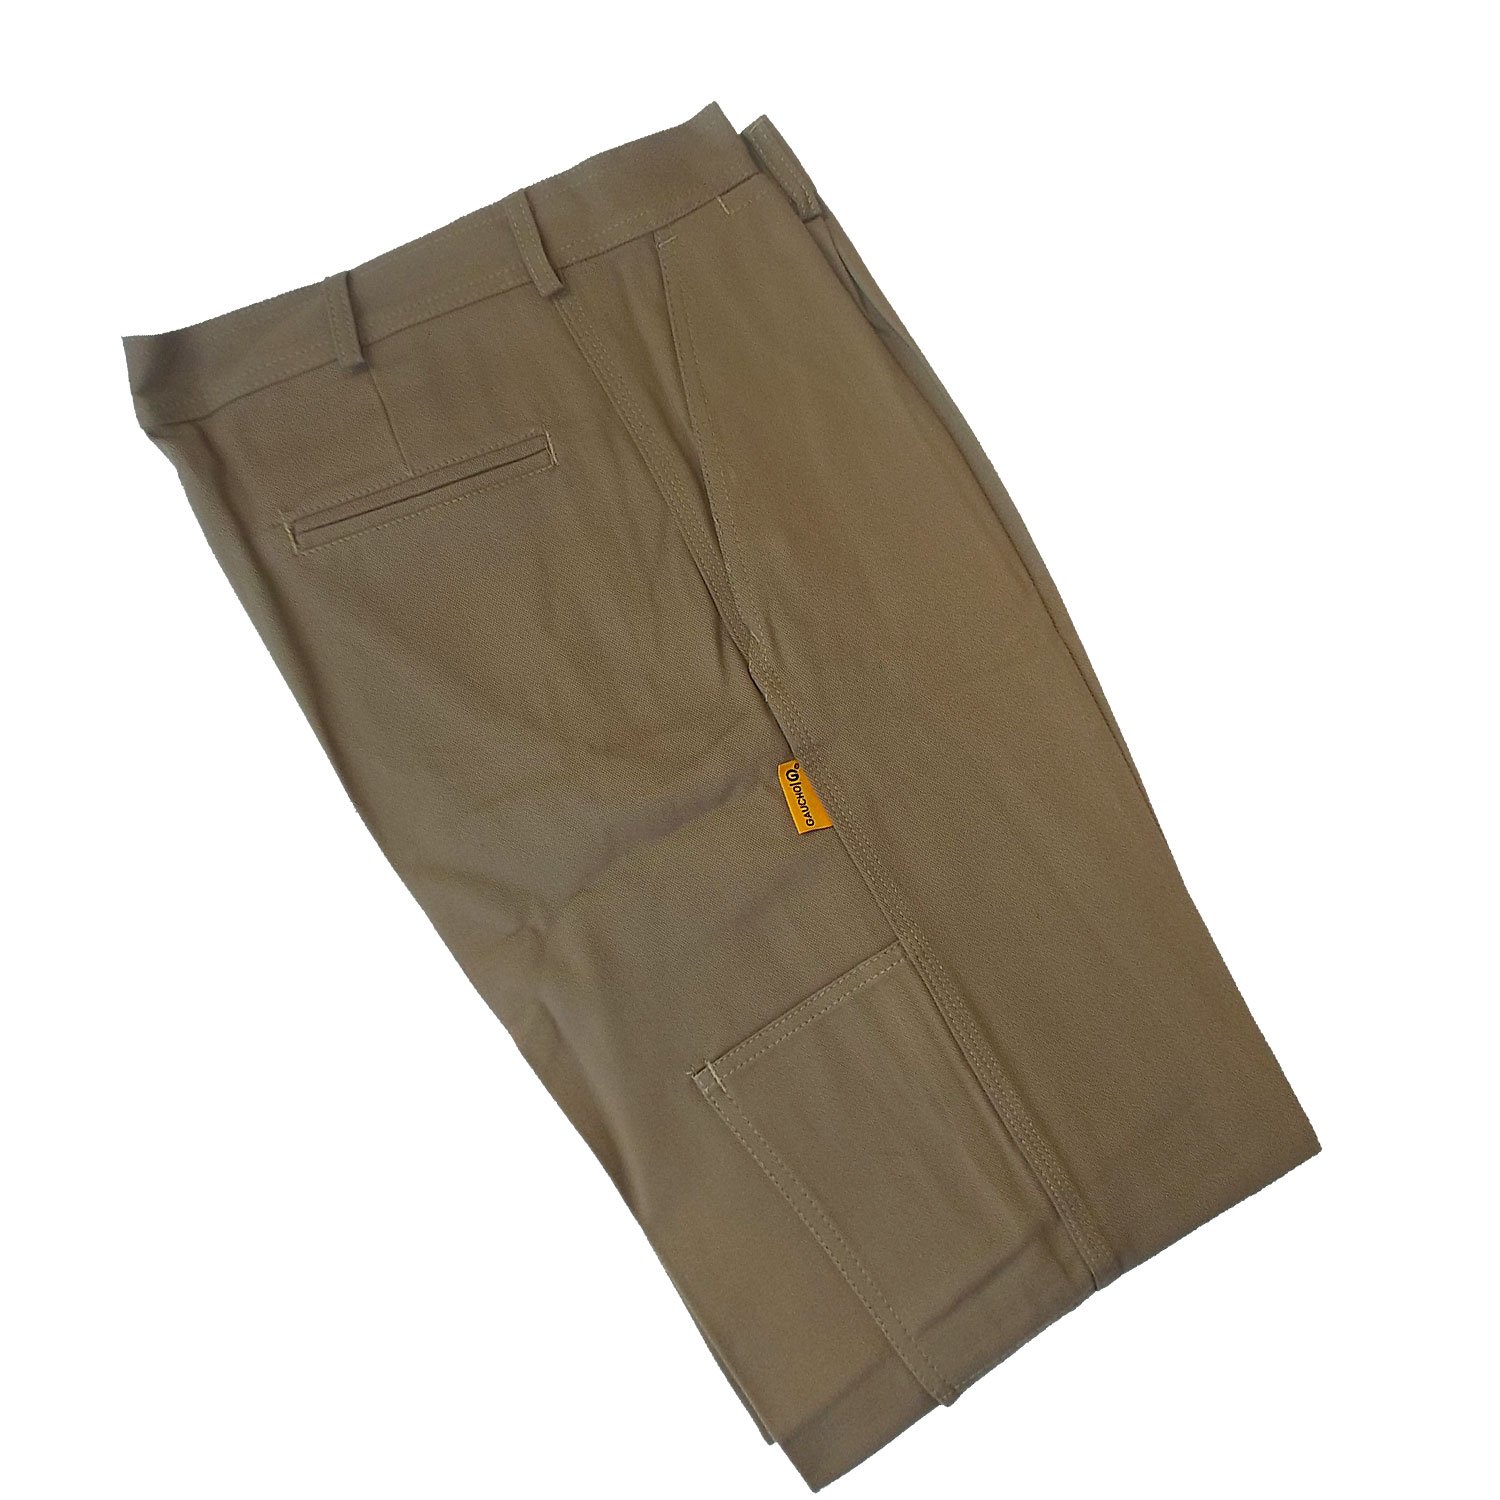 Pantalon de trabajo beige – Agroveterinaria La Radial